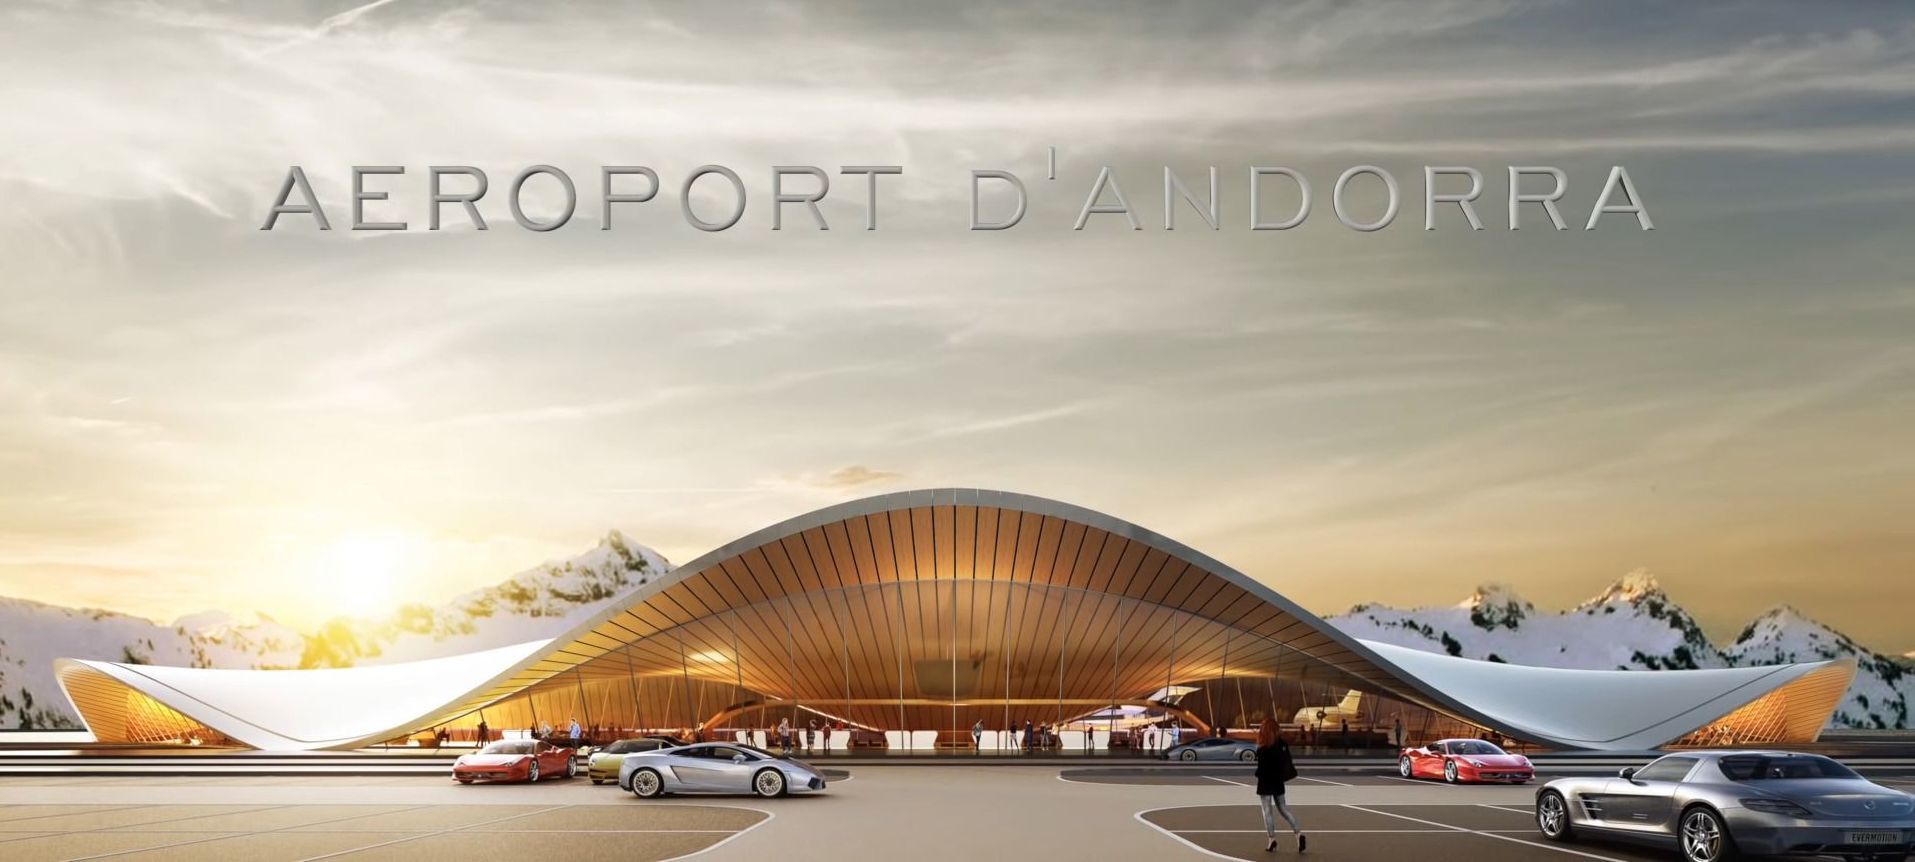 Andorra descarta construir el aeropuerto de Grau Roig - Noticias -  Nevasport.com